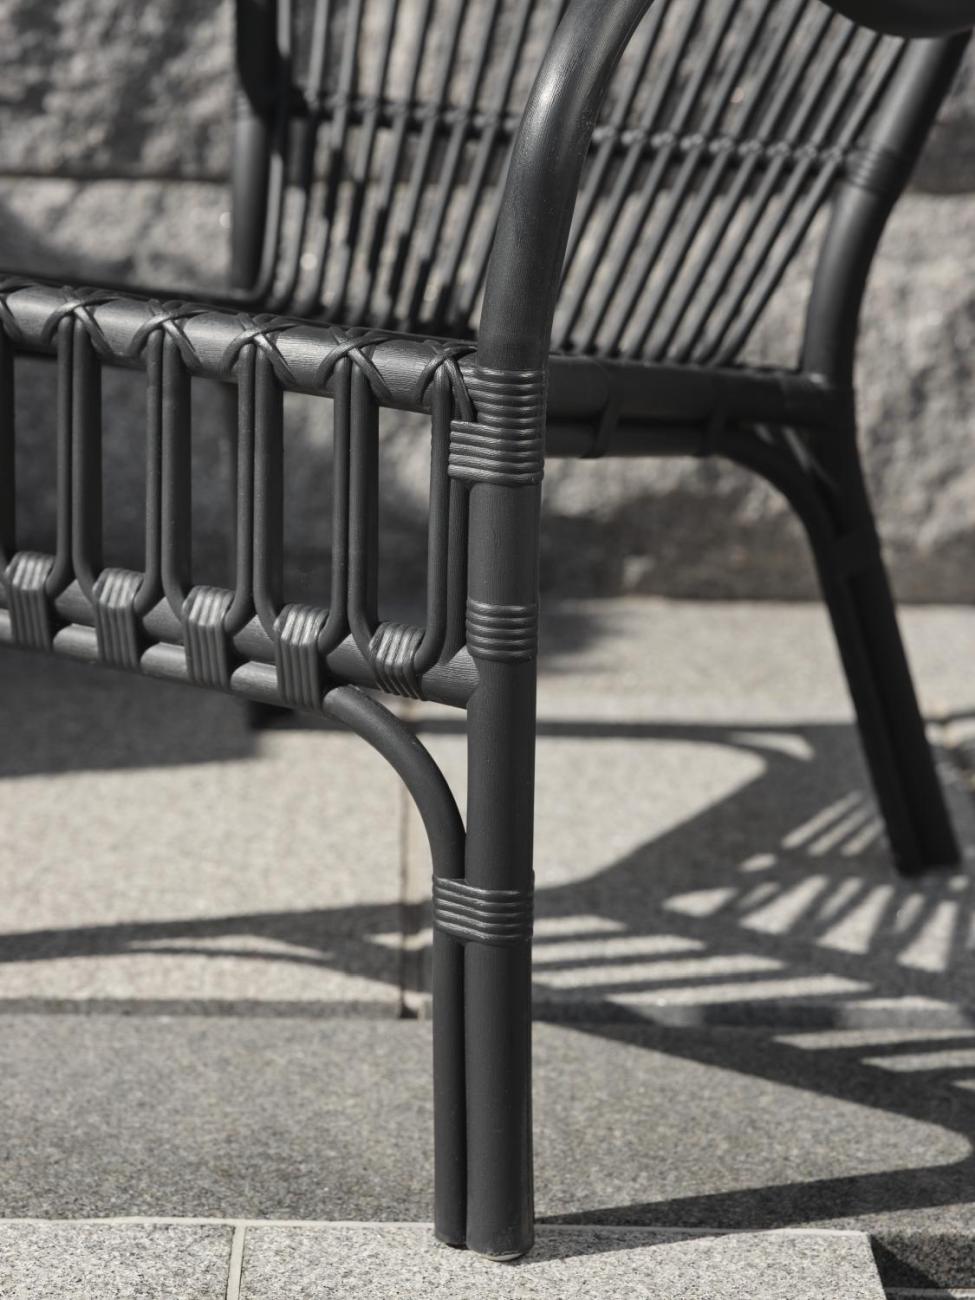 Der Gartensessel Waltz überzeugt mit seinem modernen Design. Gefertigt wurde er aus Kunststoff, welches einen schwarzen Farbton besitzt. Das Gestell ist auch aus Kunststoff und hat eine schwarze Farbe. Die Sitzhöhe des Sessels beträgt 41 cm.